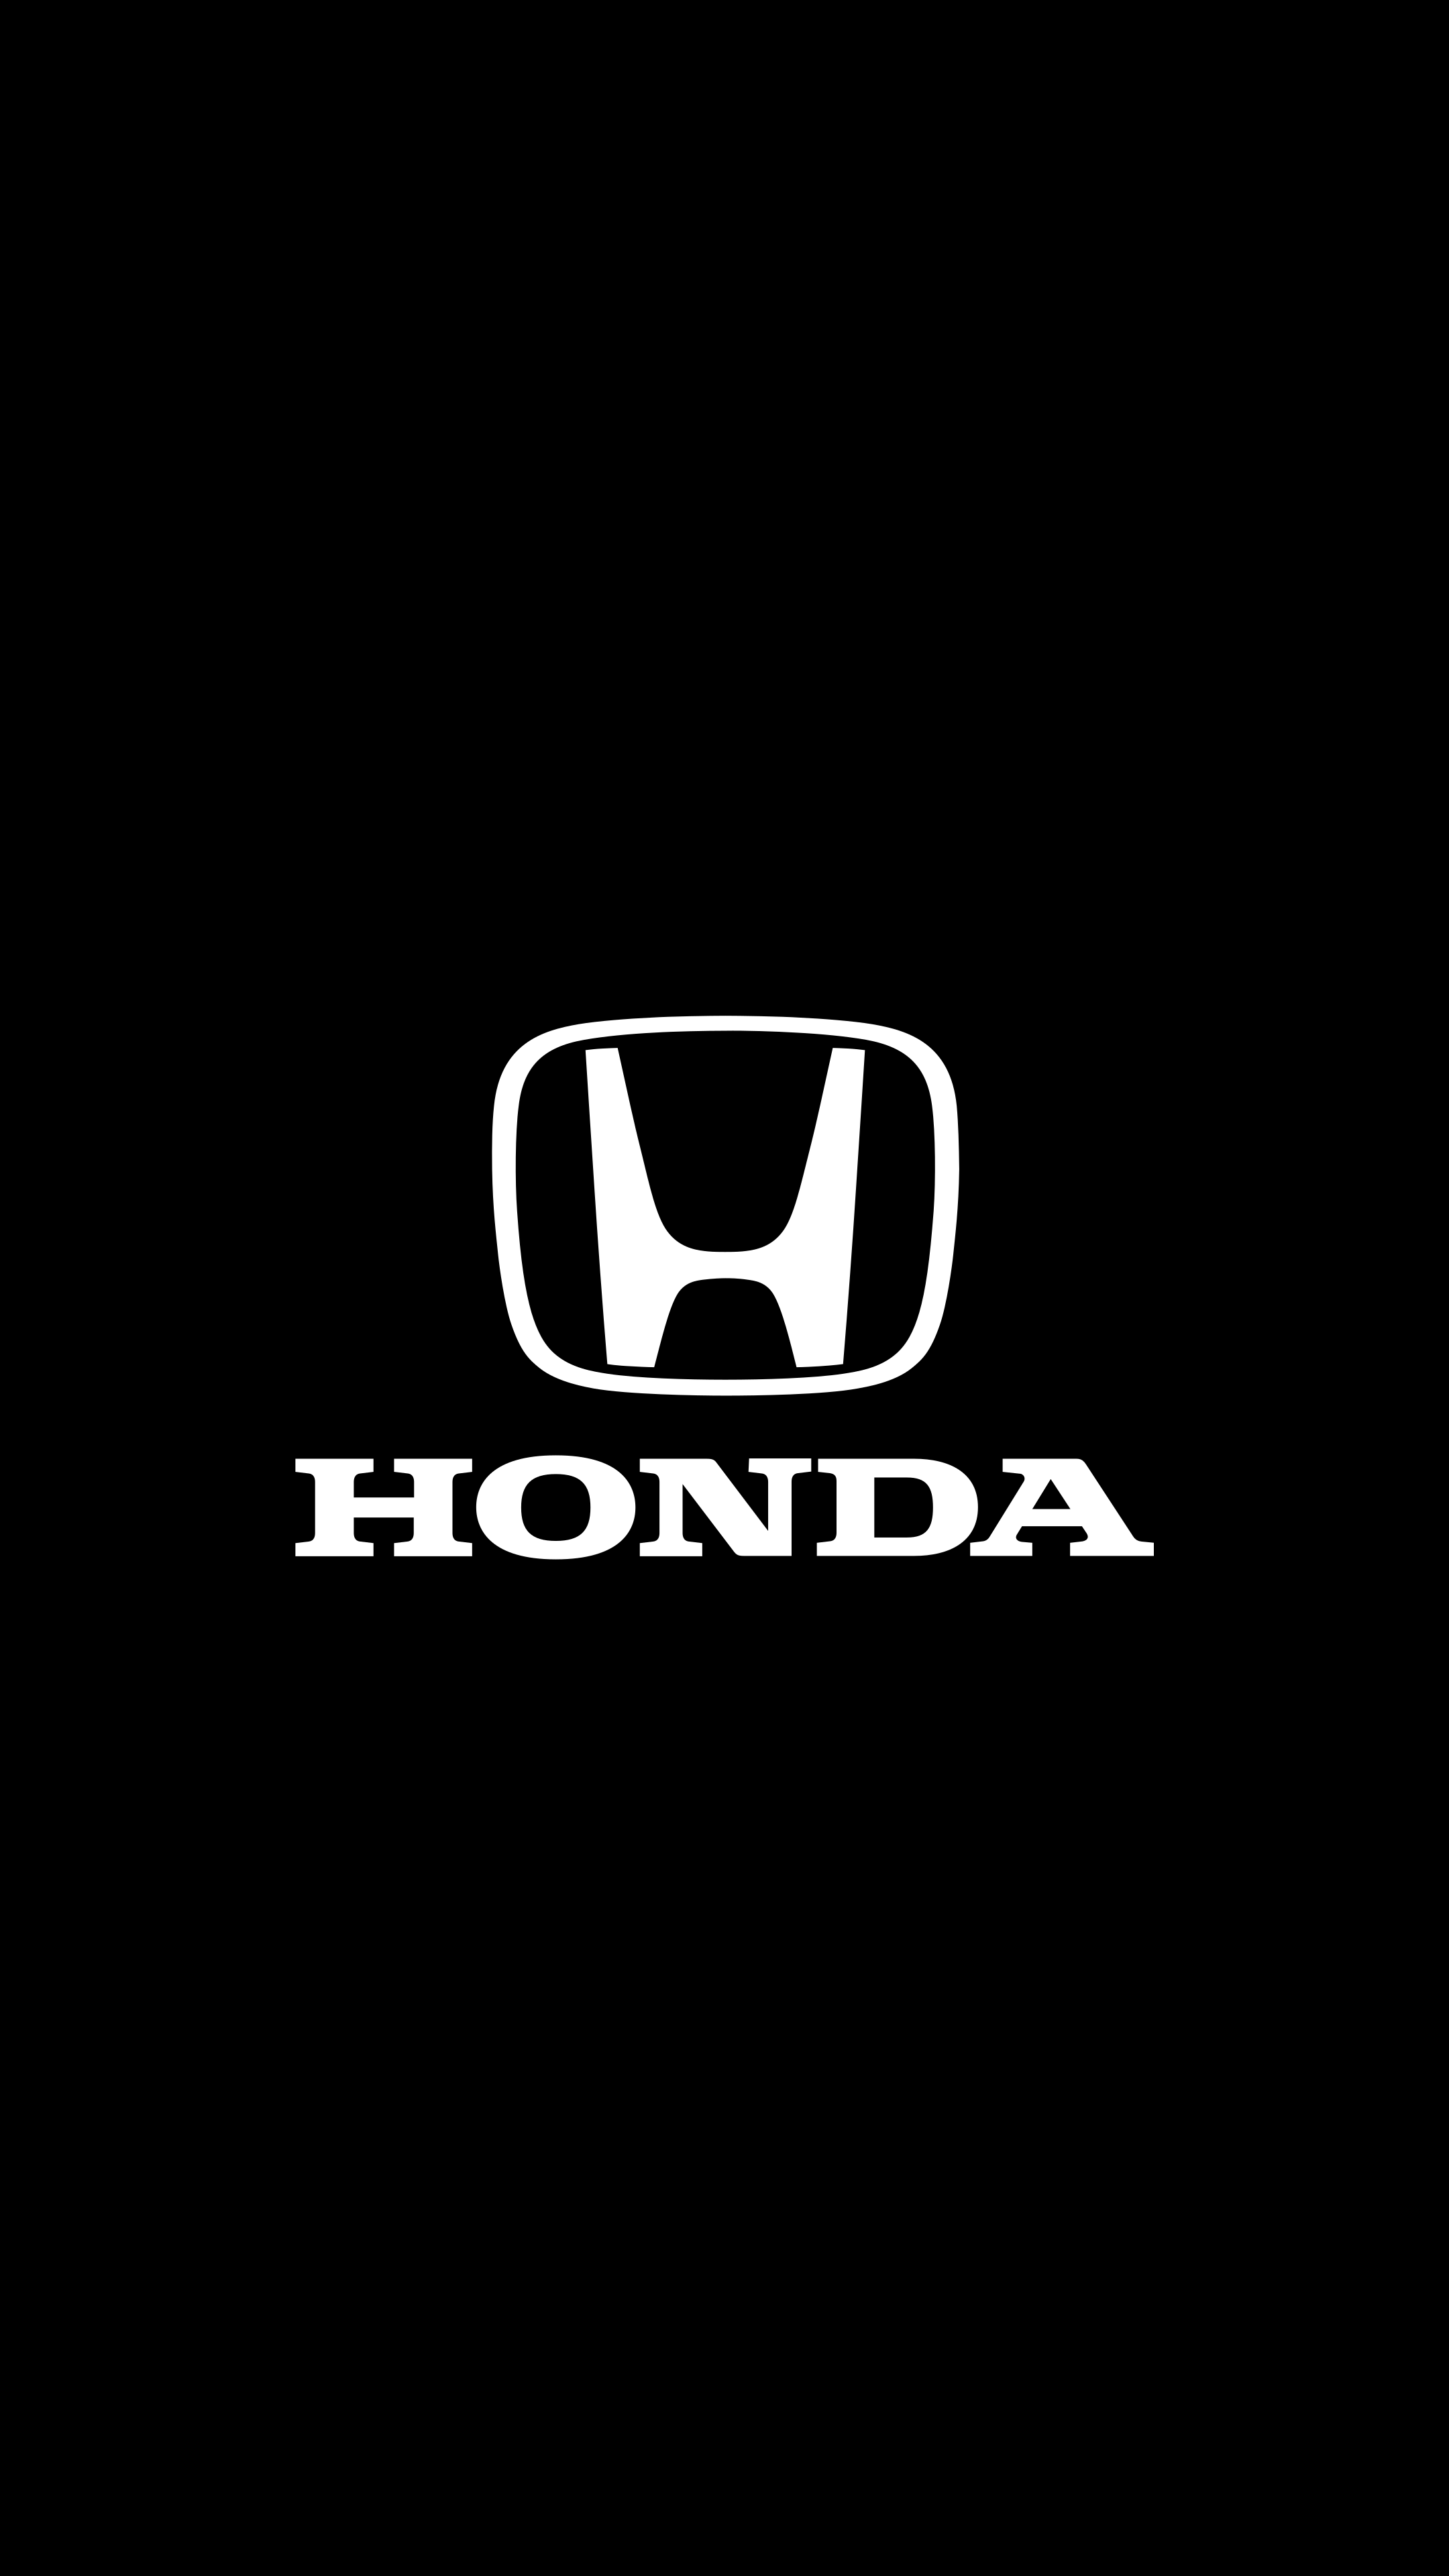 Honda k wallpaper adesivos para carros carros de luxo wallpapers carro